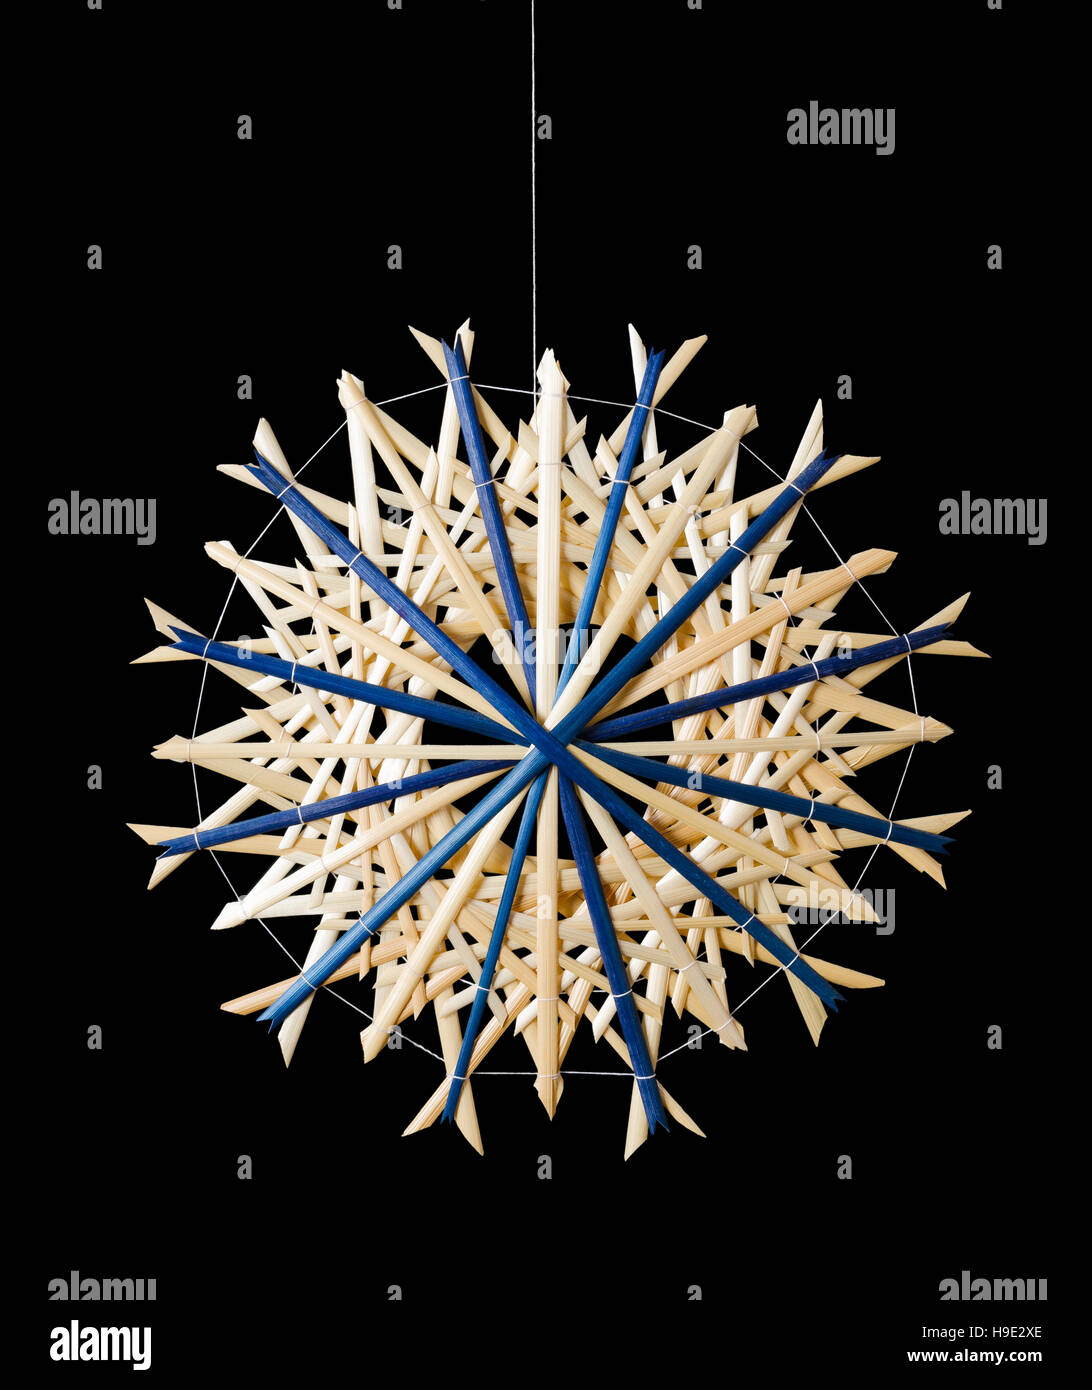 Décoration de Noël étoile paille bleu sur fond noir. Décor fait main pour windows, comme cadeaux ou à accrocher sur l'arbre de Noël. Banque D'Images